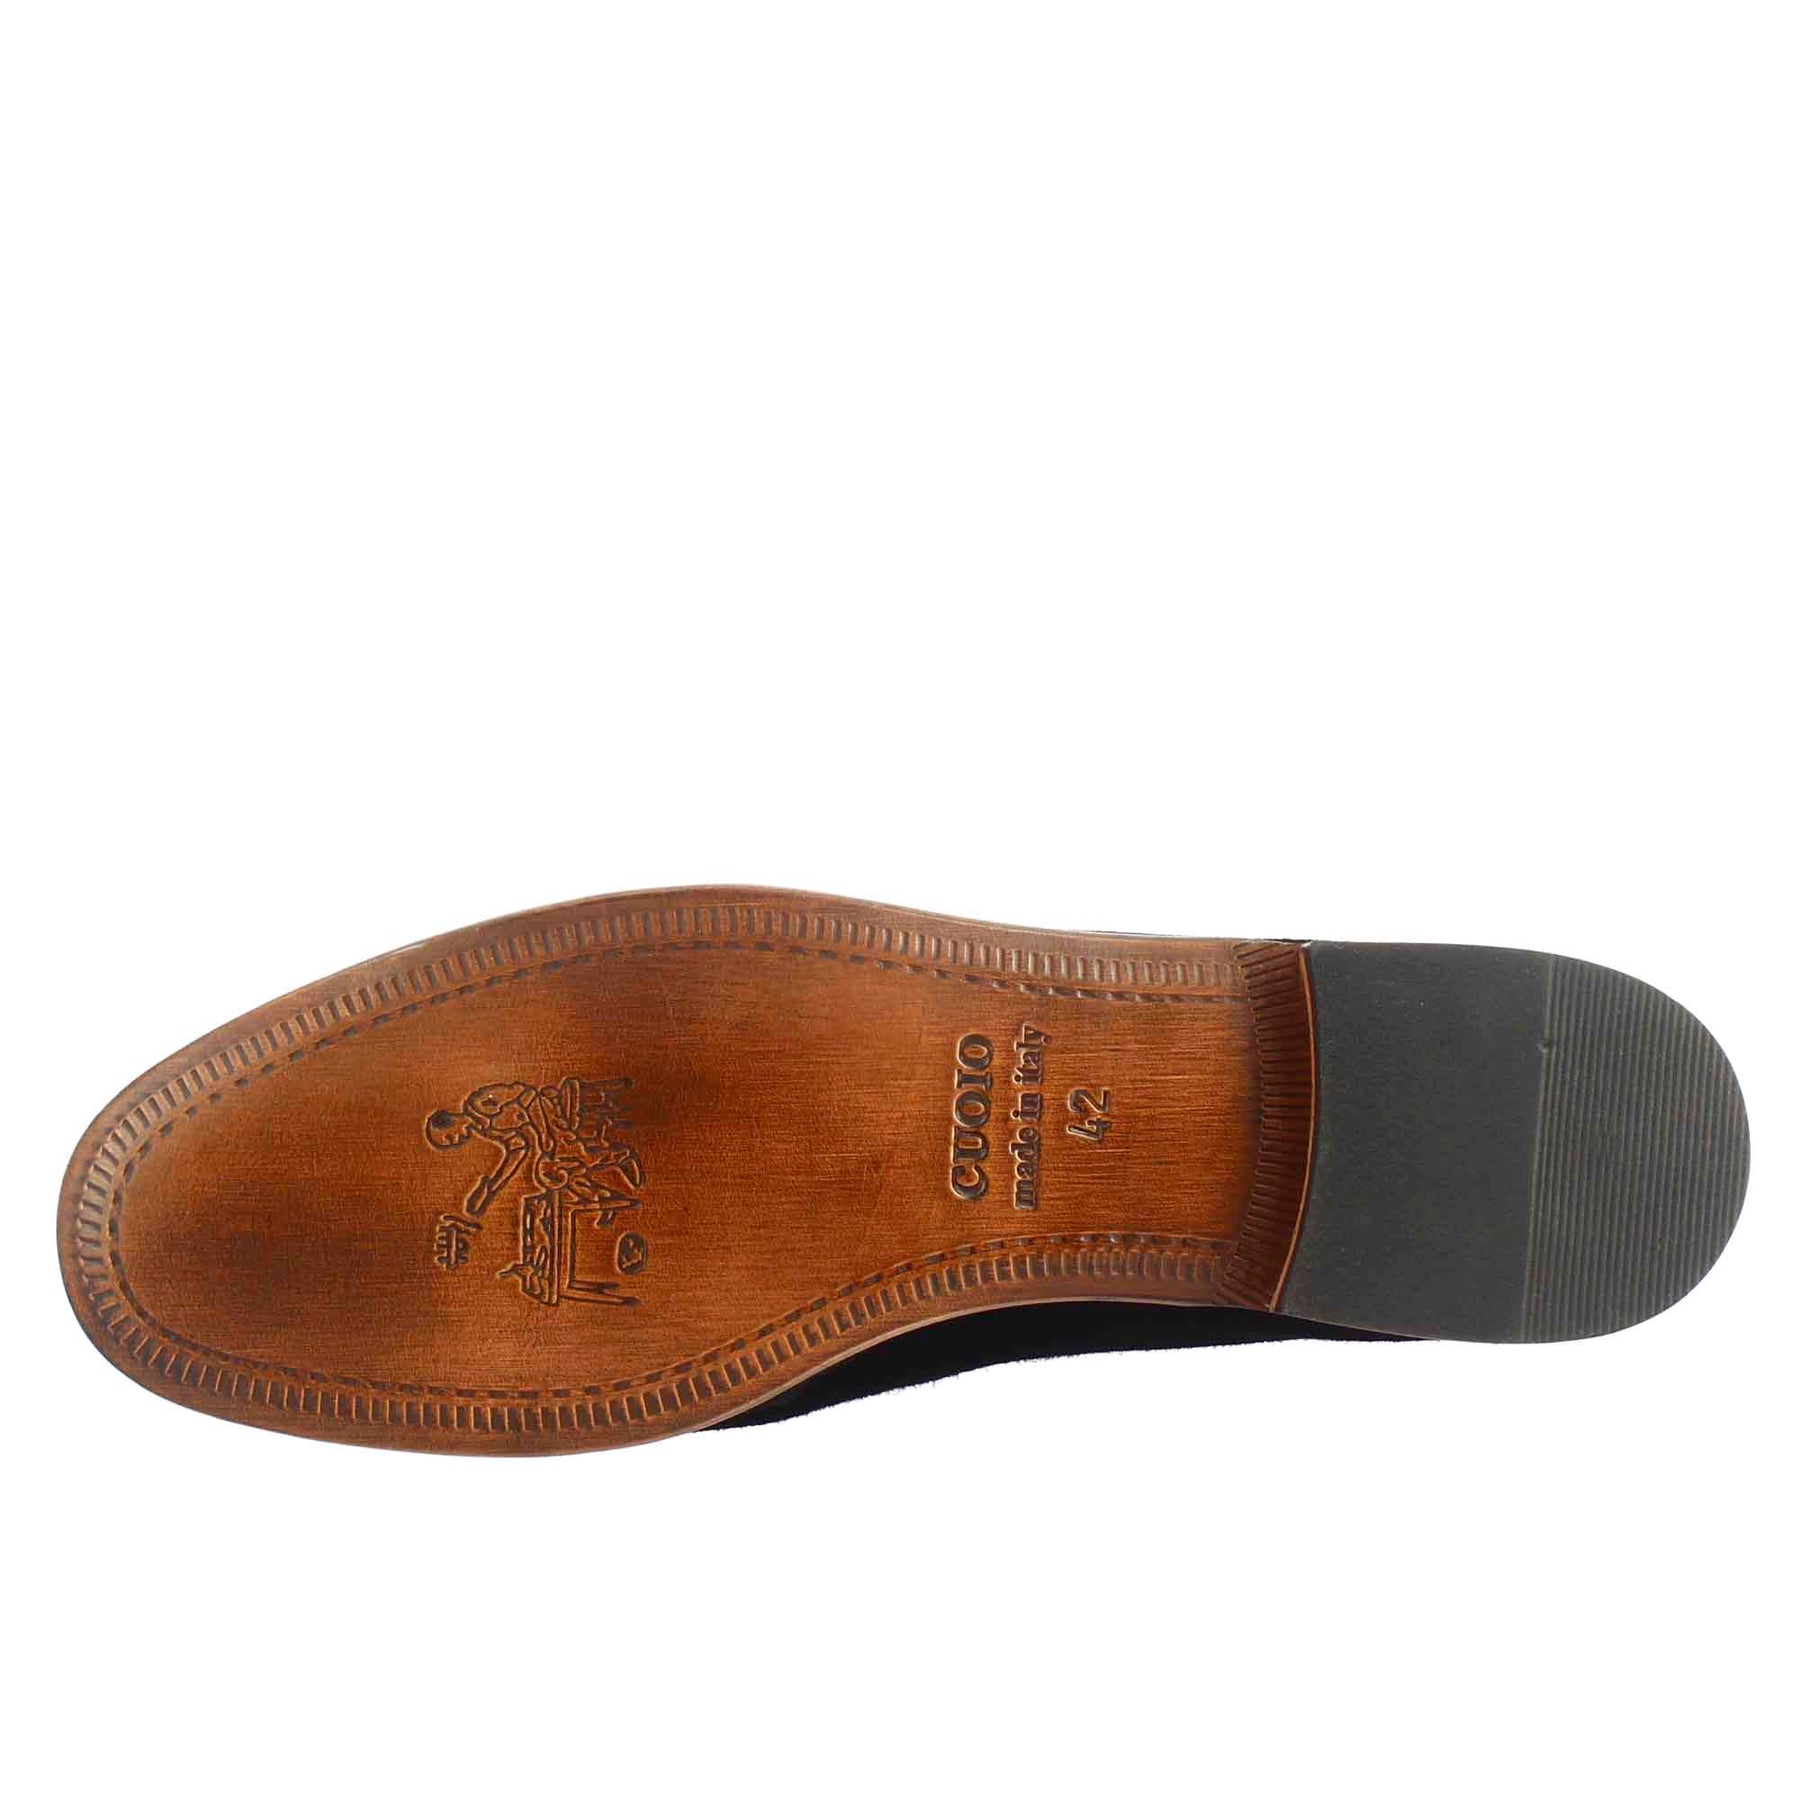 Black suede men's pocket style loafer 